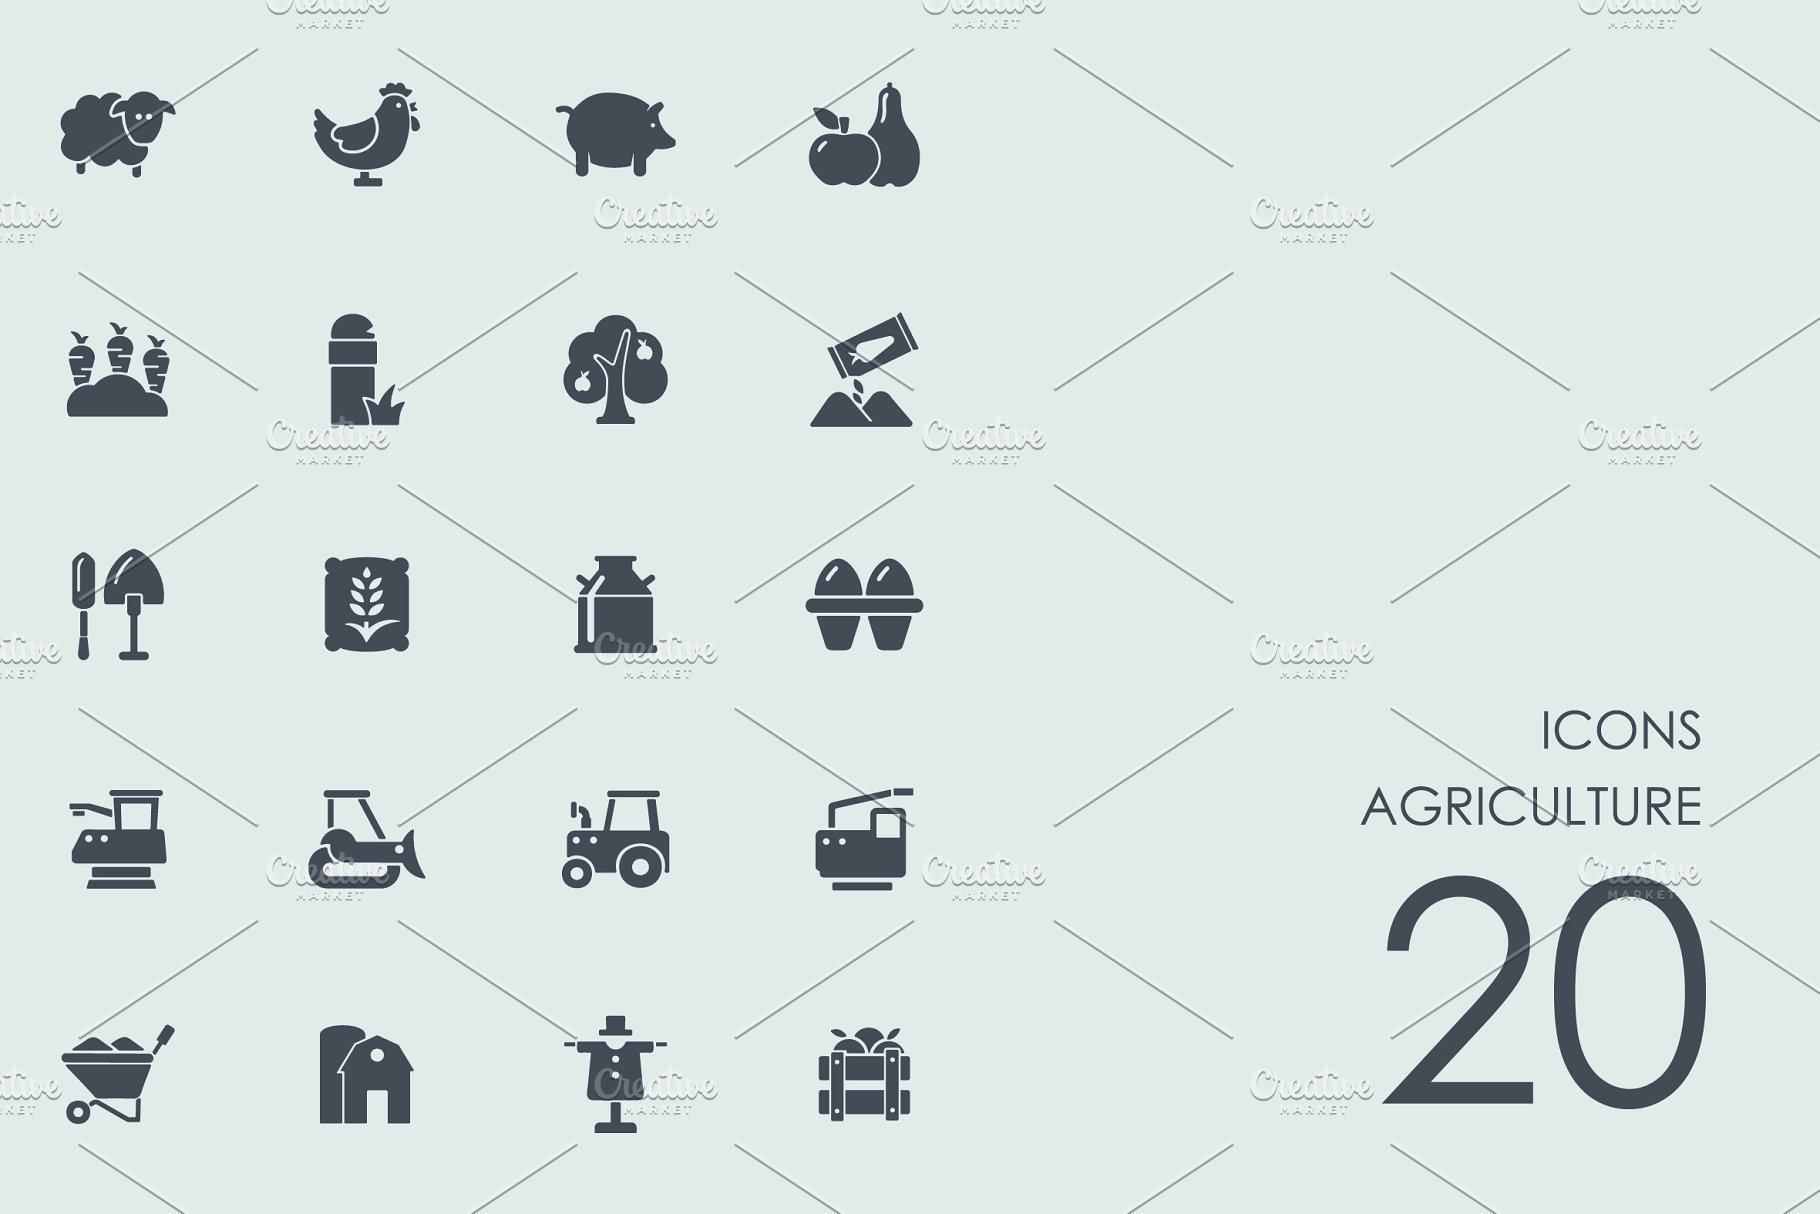 农场常用图标 Agriculture icons #9241